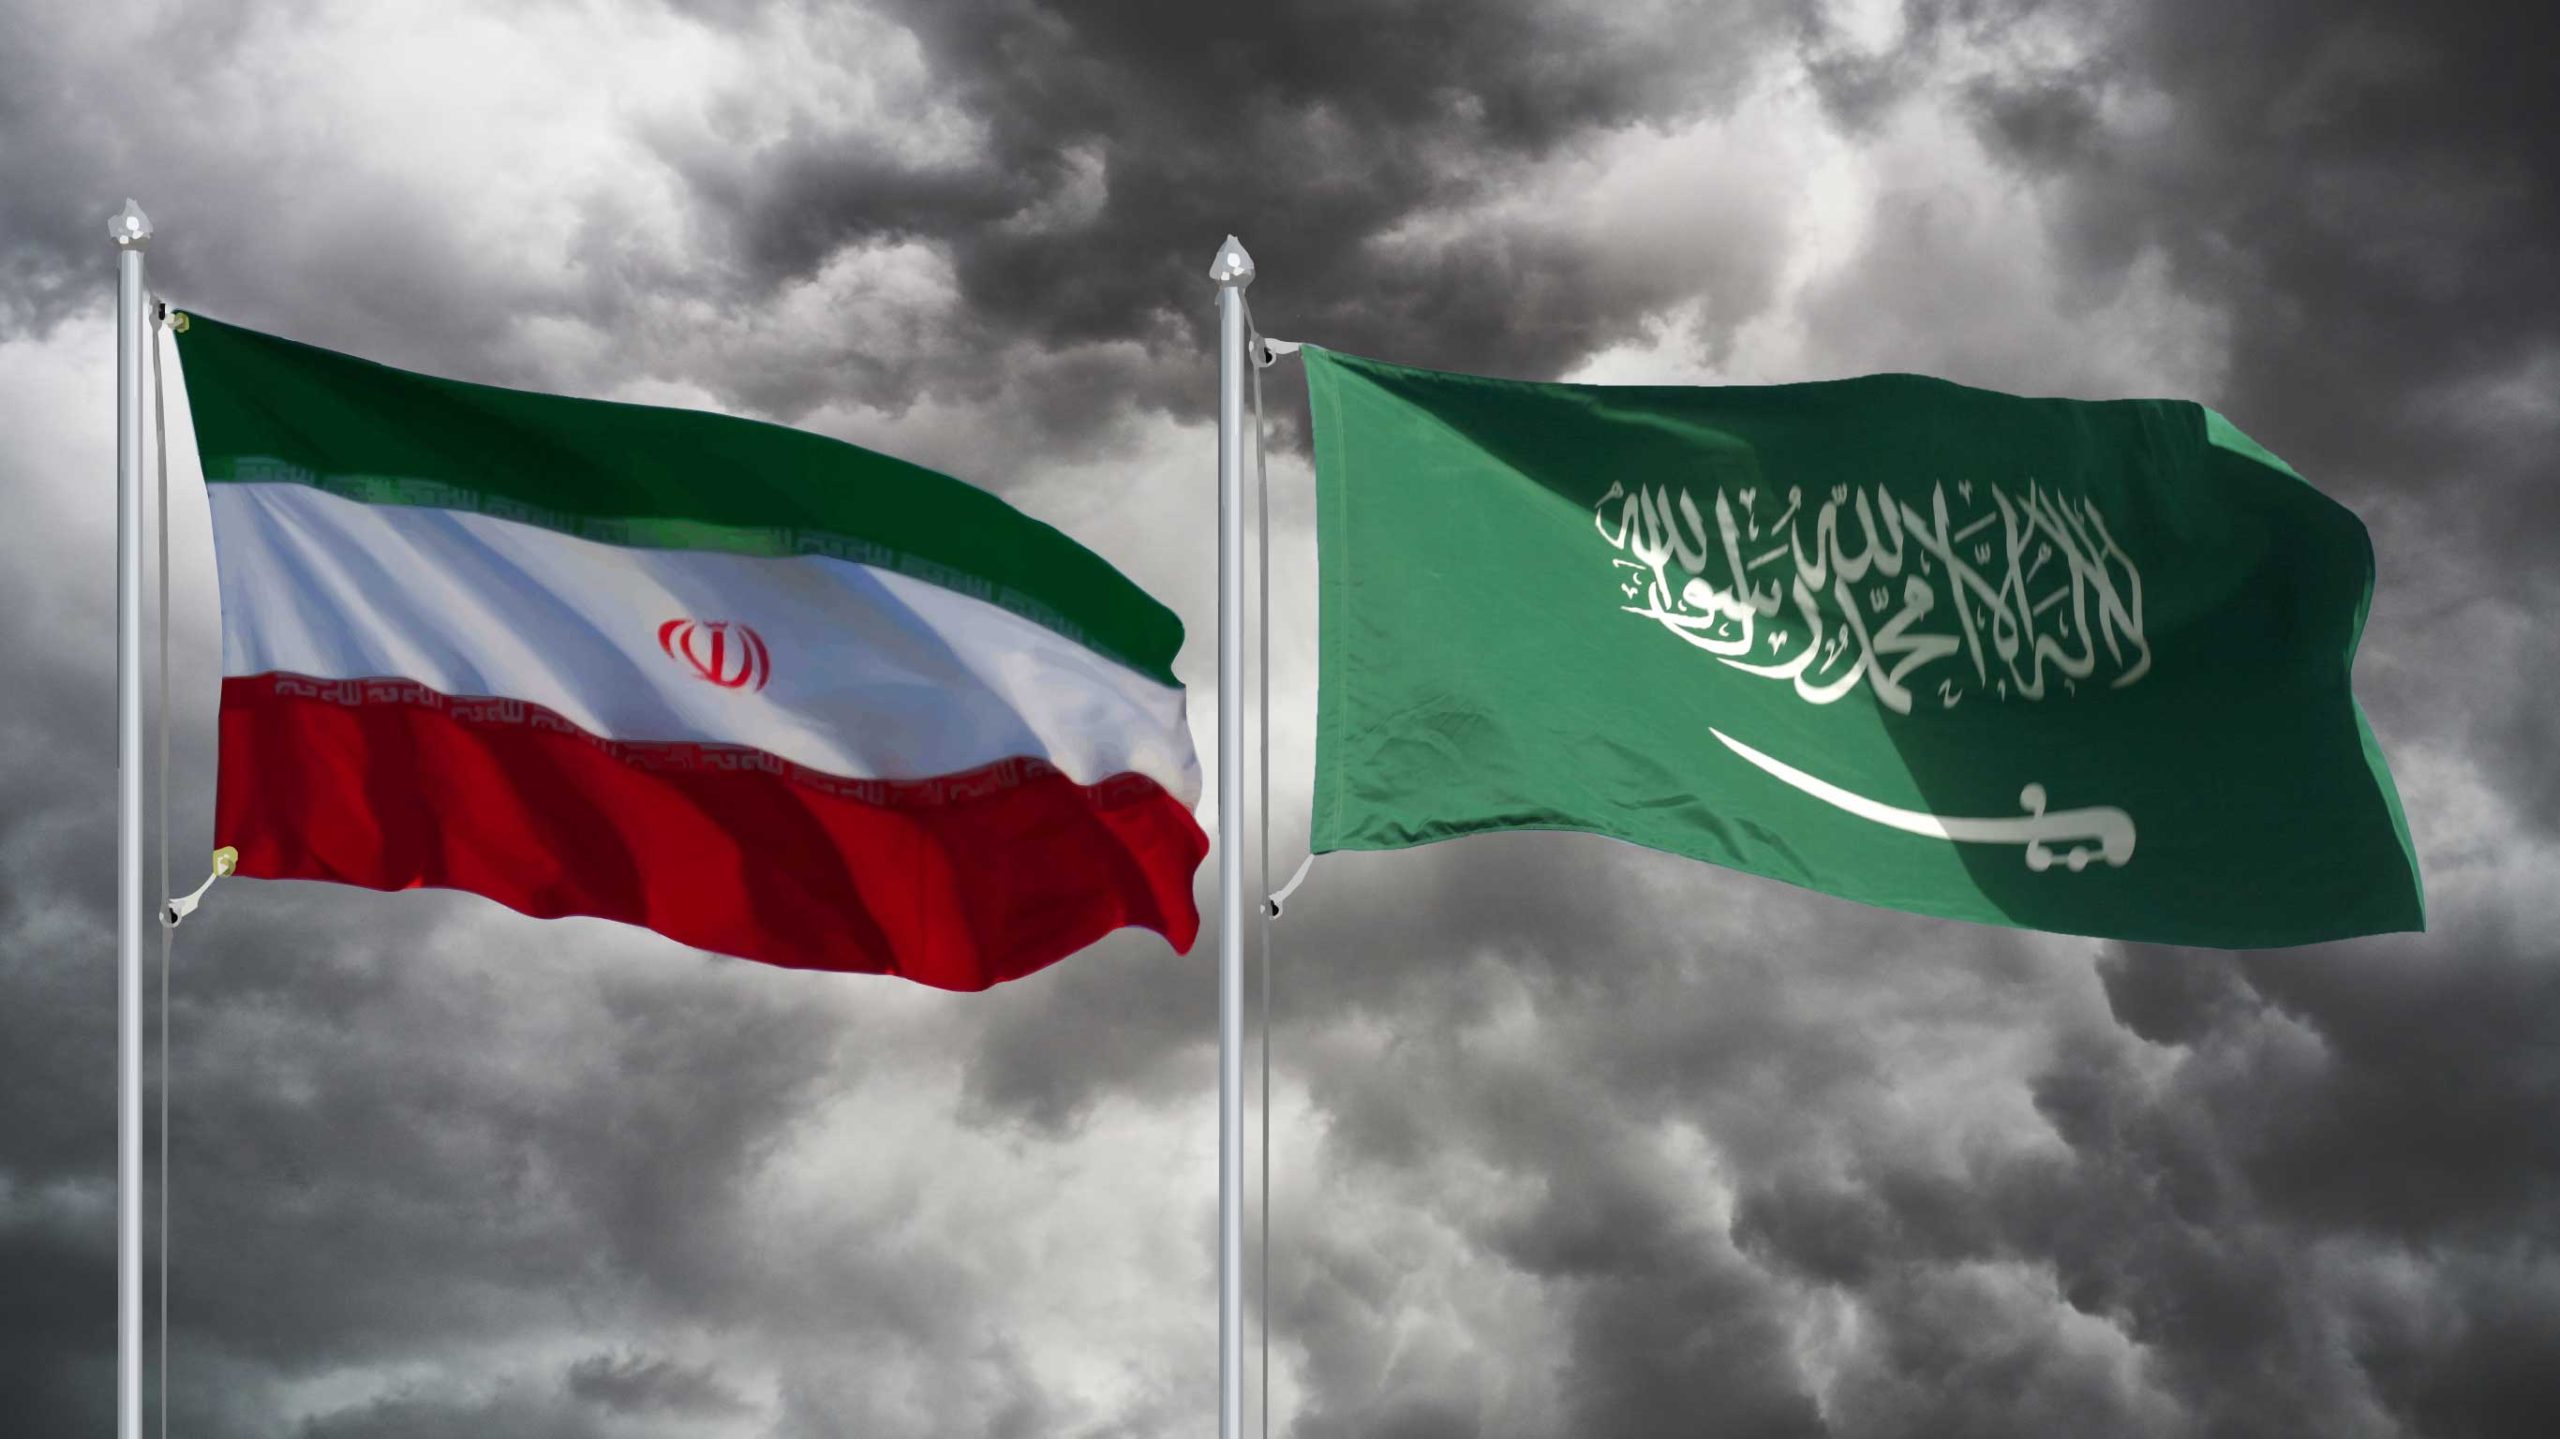 اتفاق سعودي إيراني على اجتماع وزيري الخارجية خلال شهر رمضان